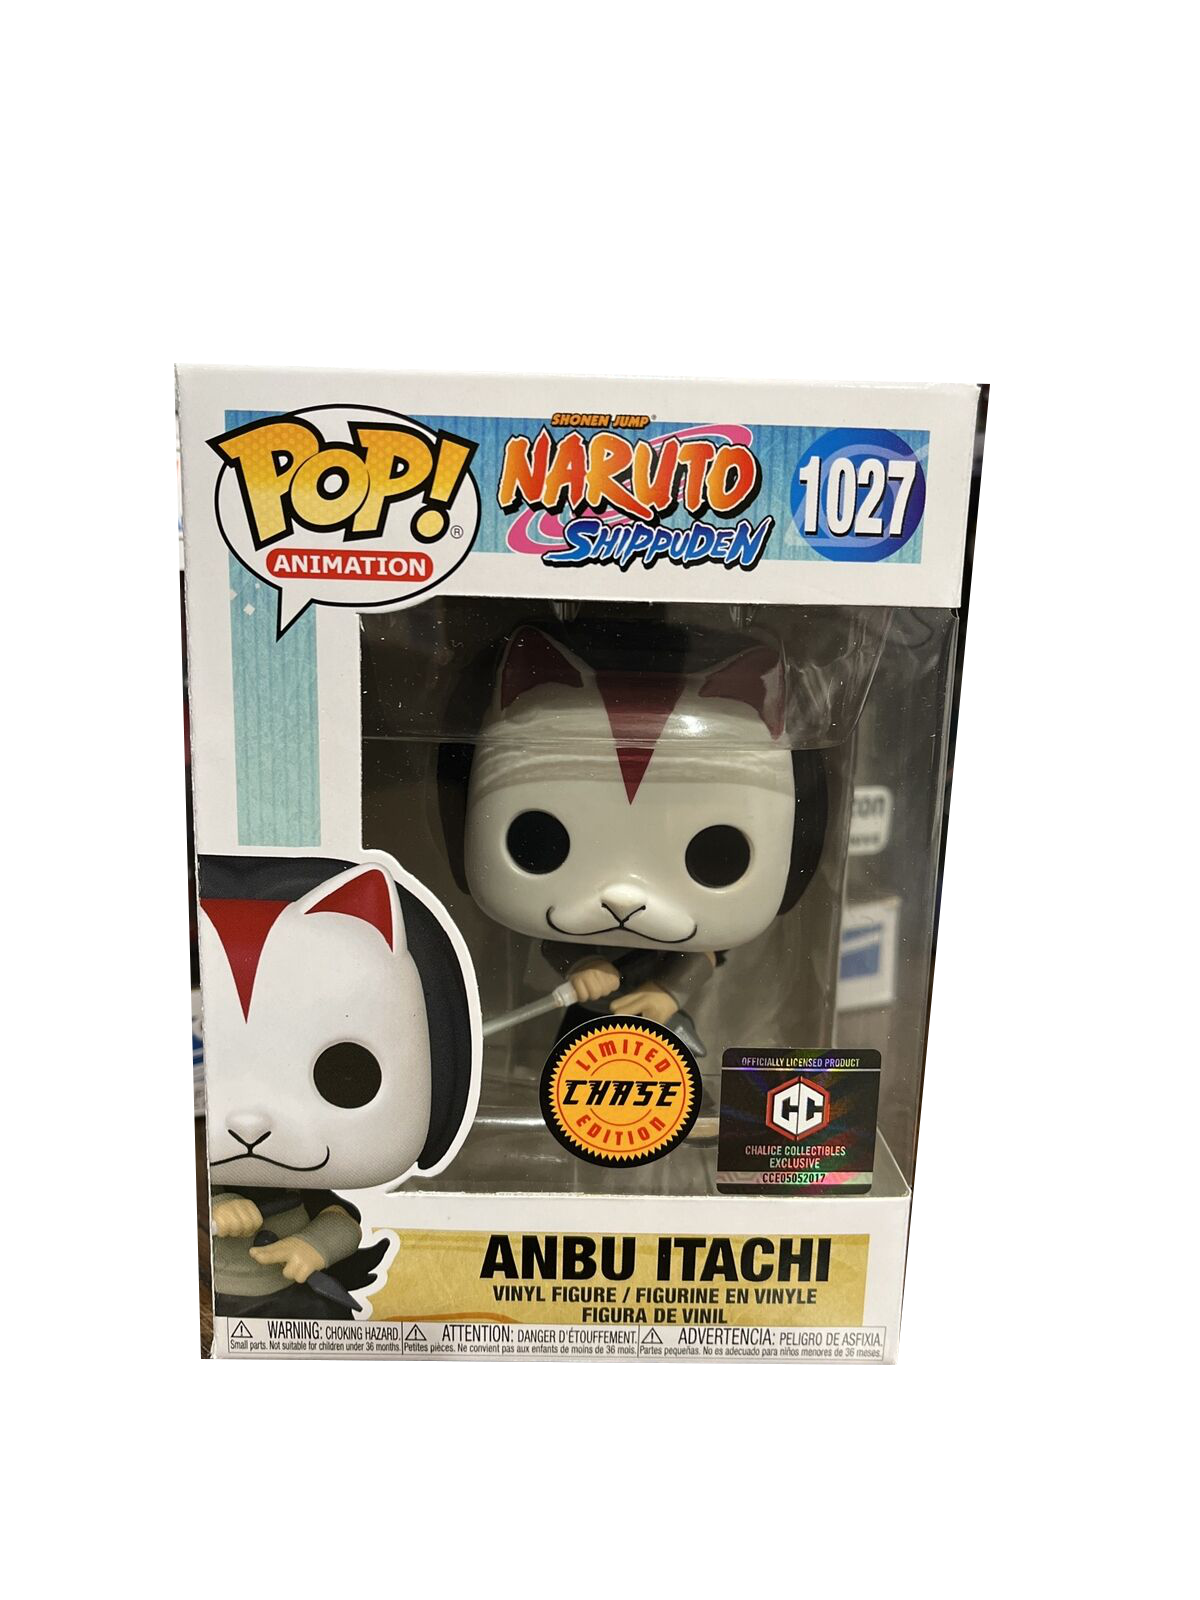 Anbu Itachi Special Edition 1027 Figure, Naruto Shippuden Figure